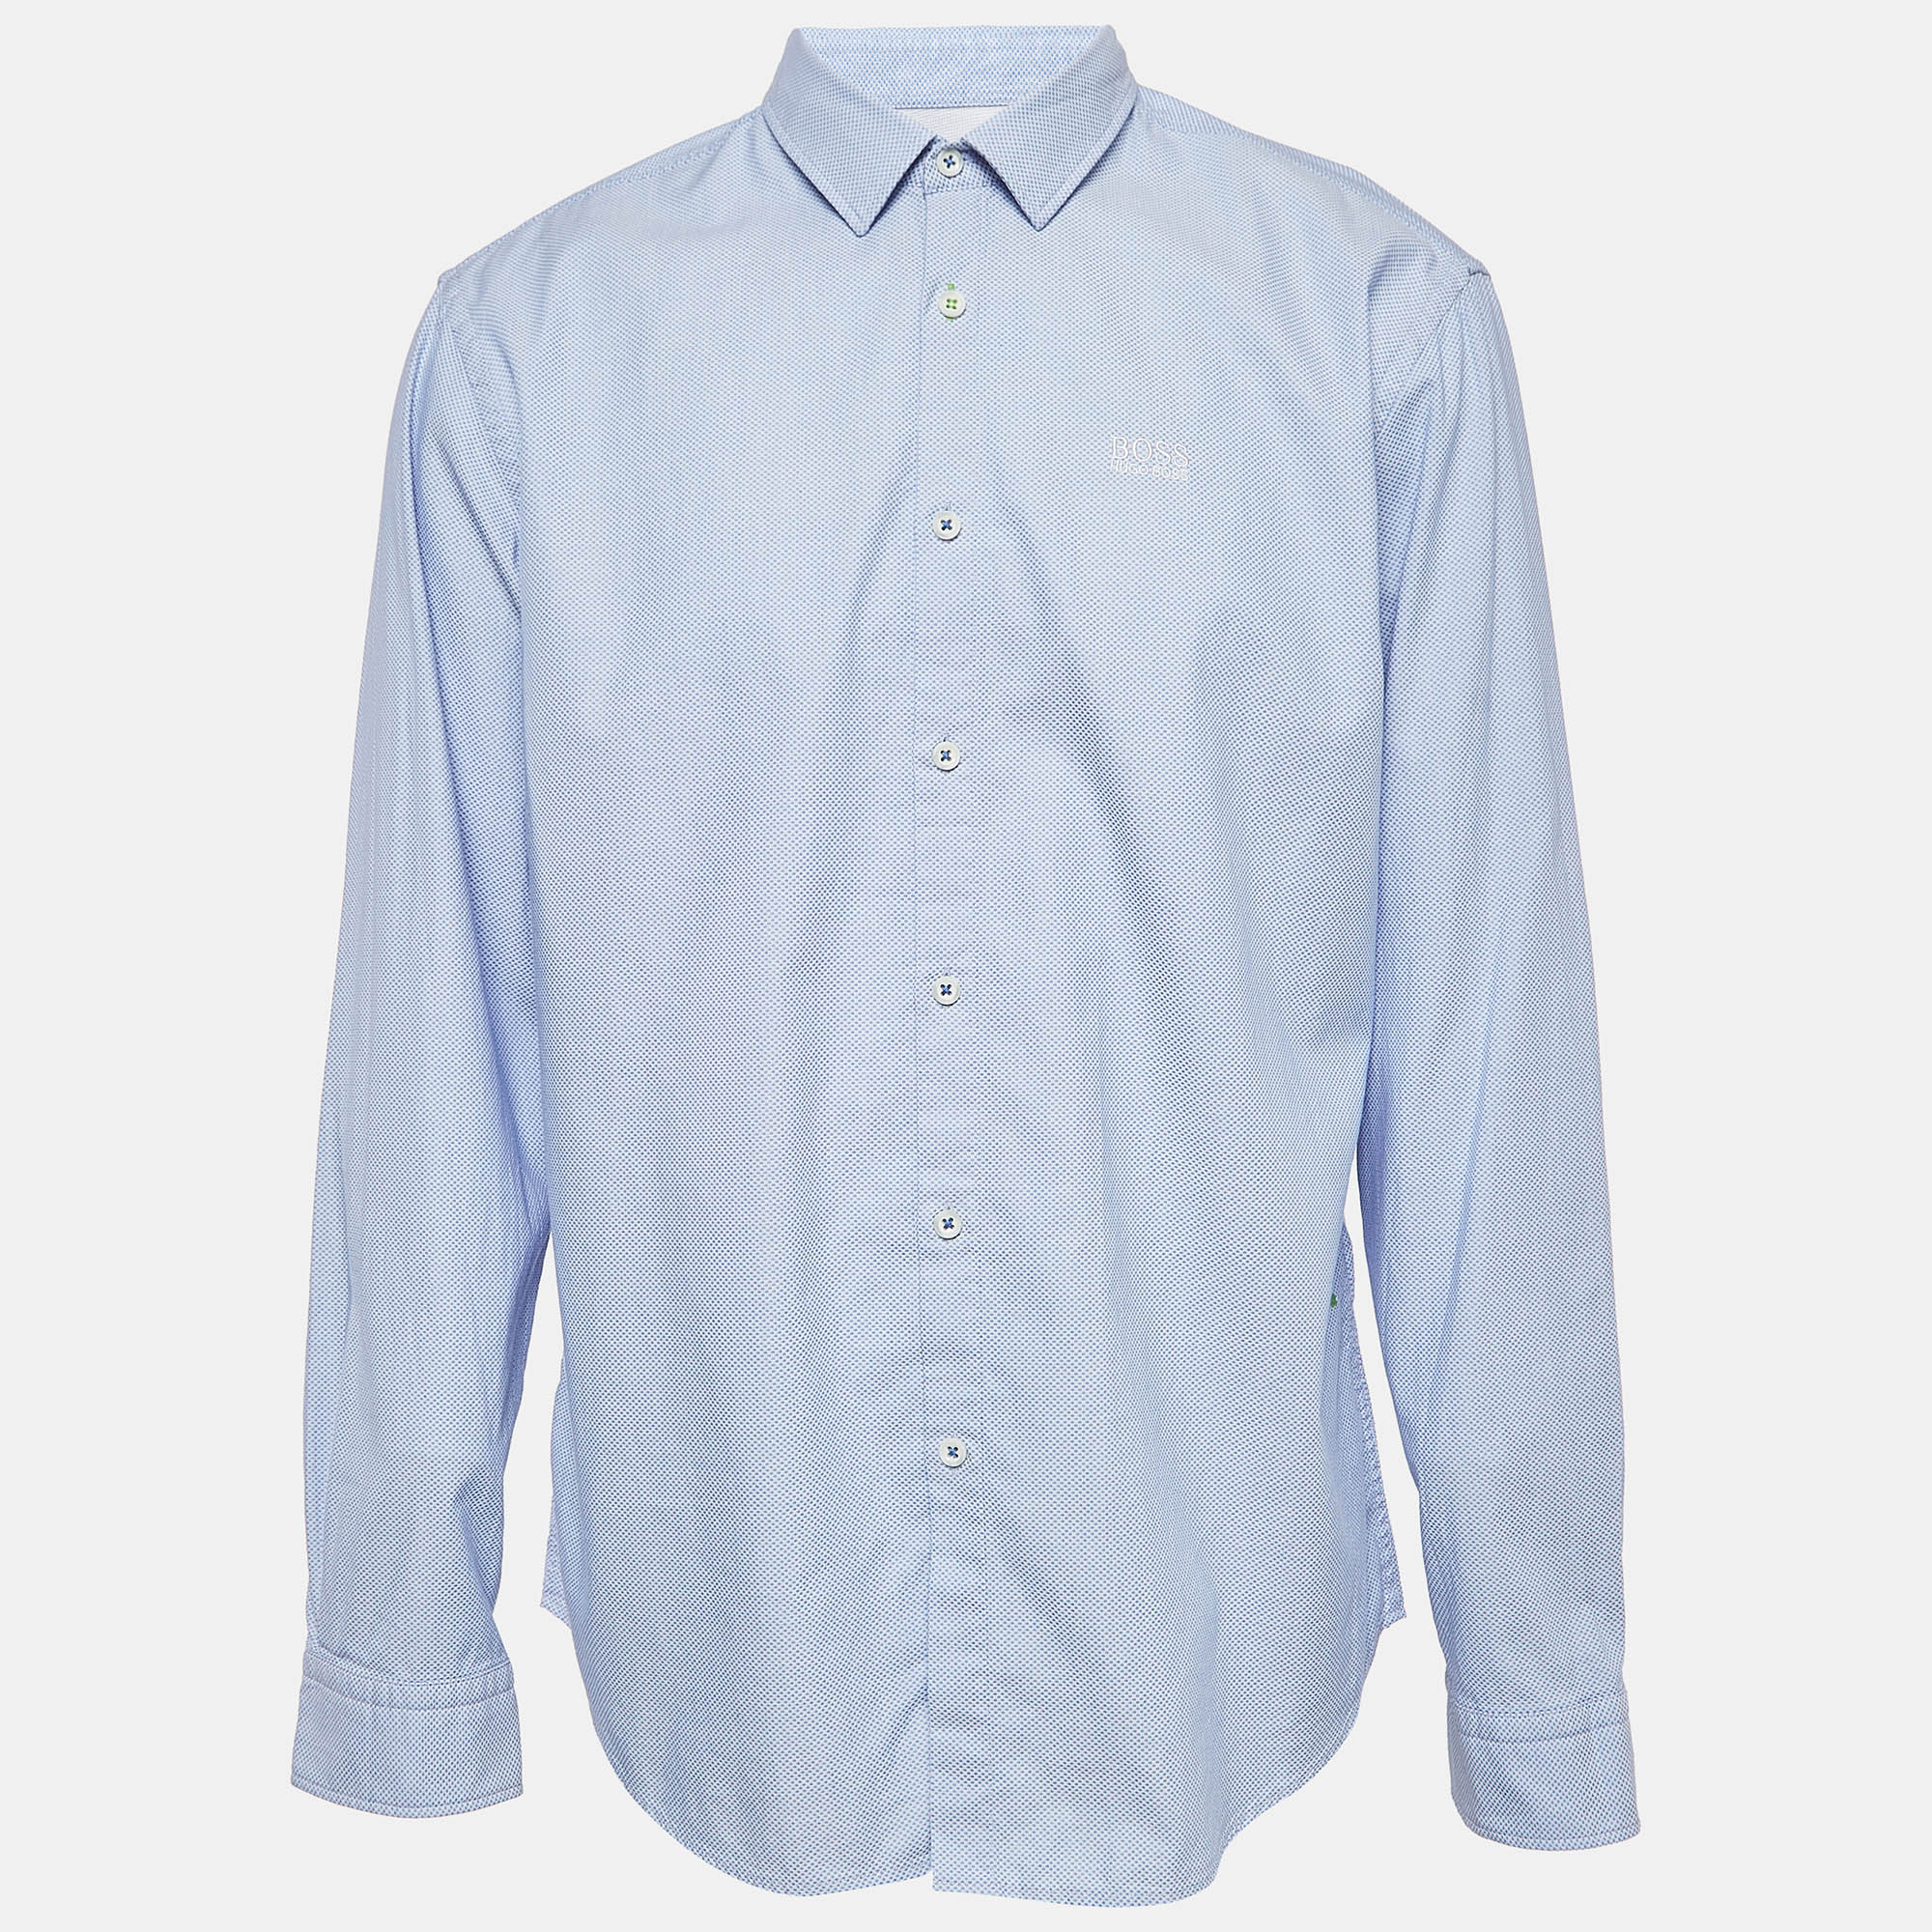 Boss by hugo boss blue textured cotton button front shirt xxl